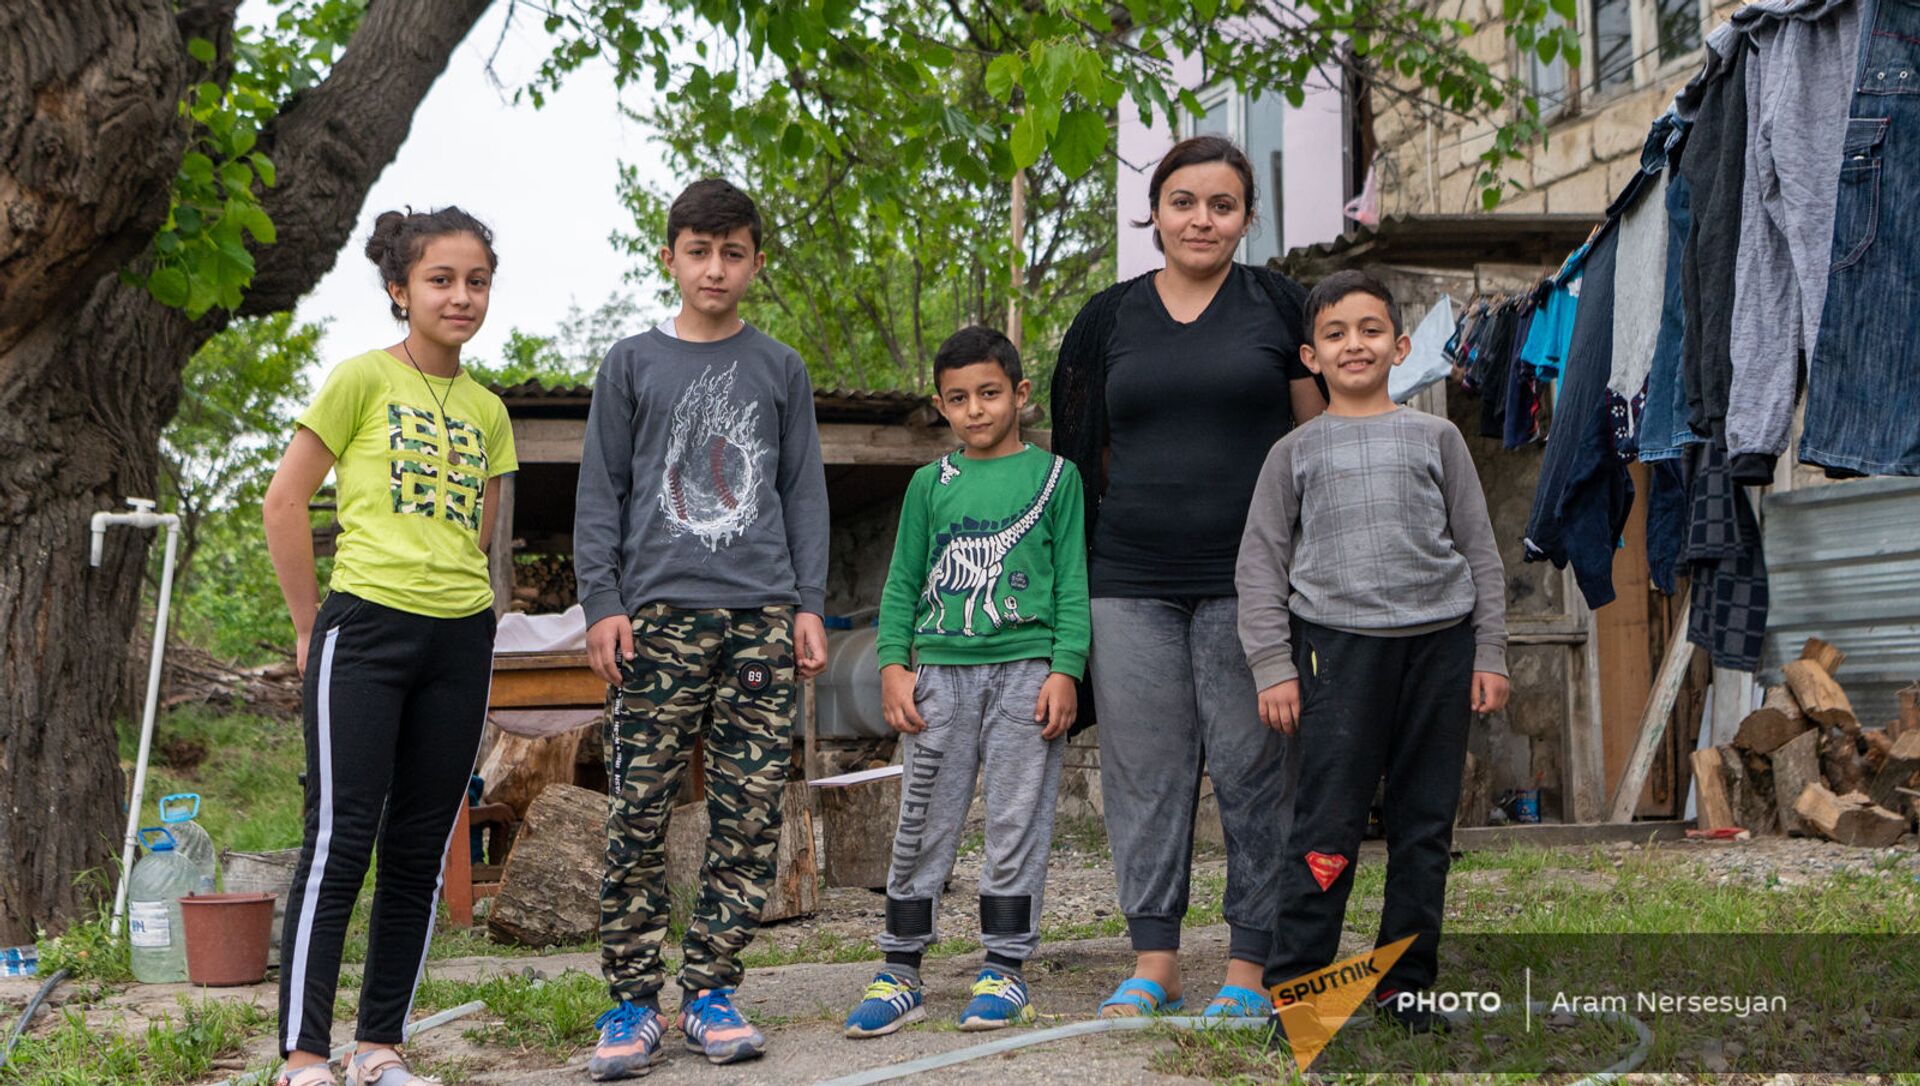 Нарине Товмасян с детьми во дворе арендованного доме в Аскеране - Sputnik Արմենիա, 1920, 18.05.2021